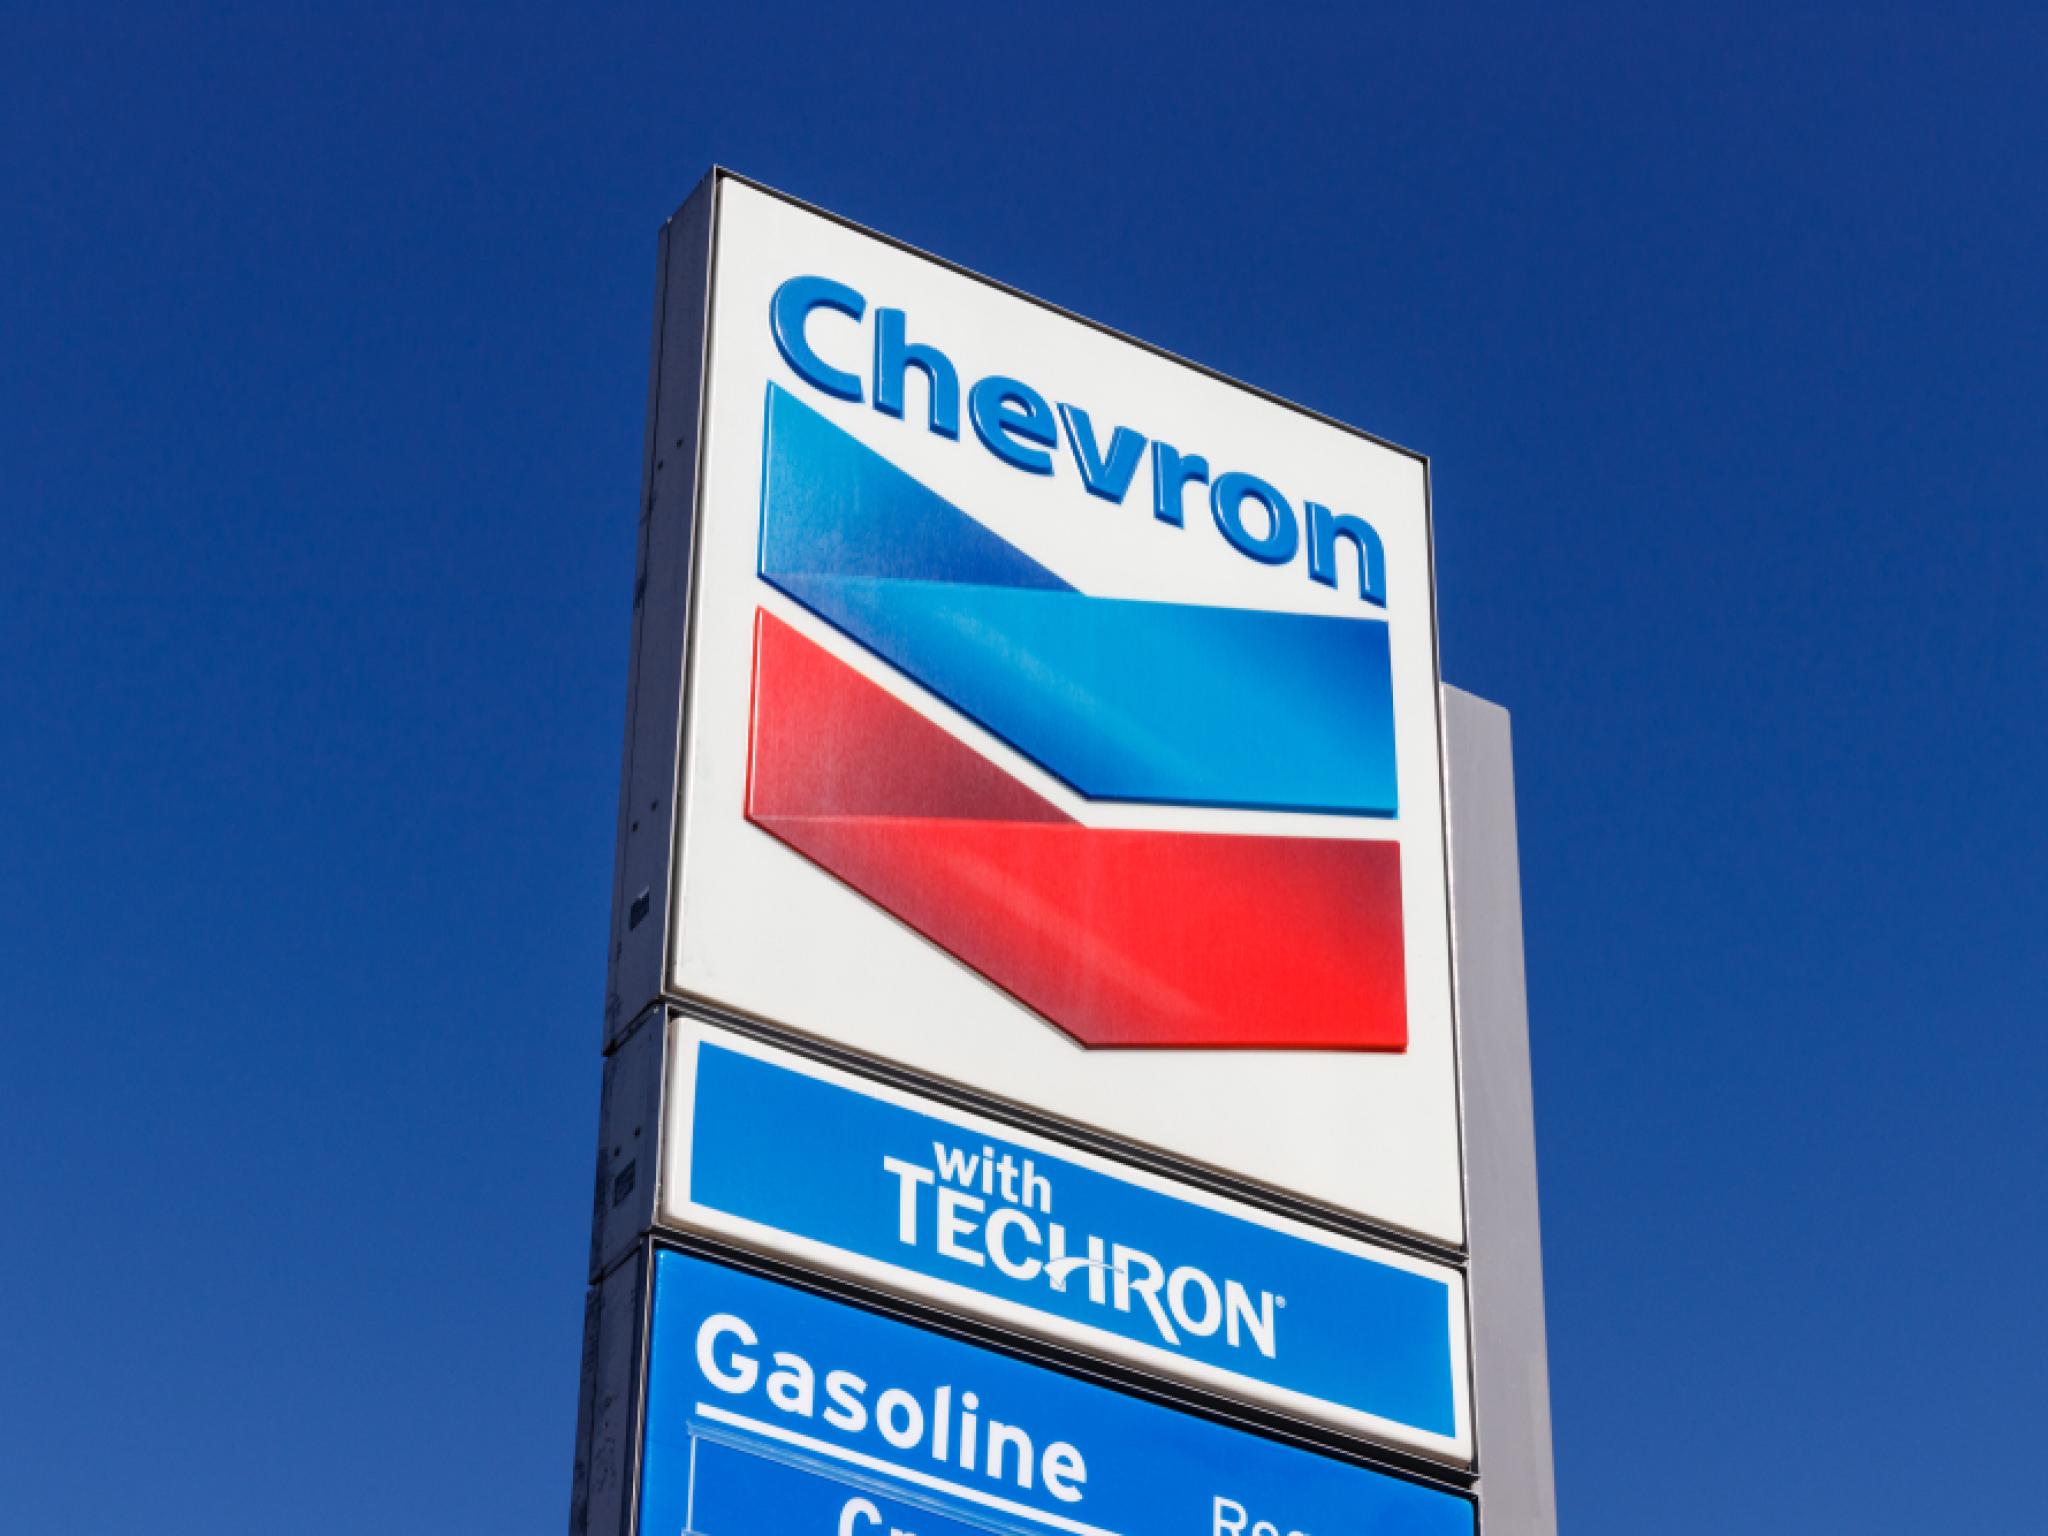  chevron-jv-launches-new-drilling-campaign-in-venezuela-report 